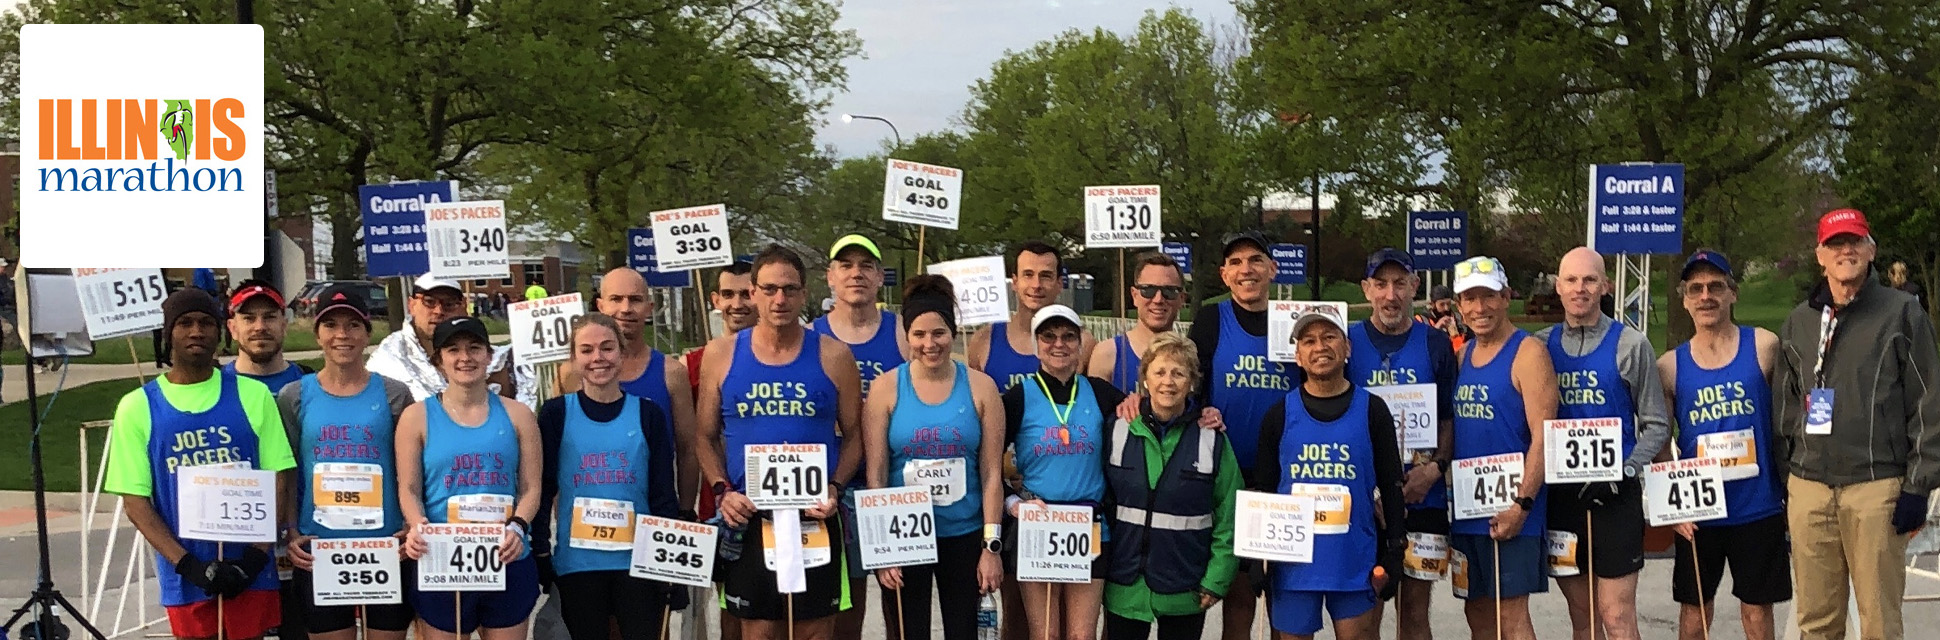 Illinois Marathon